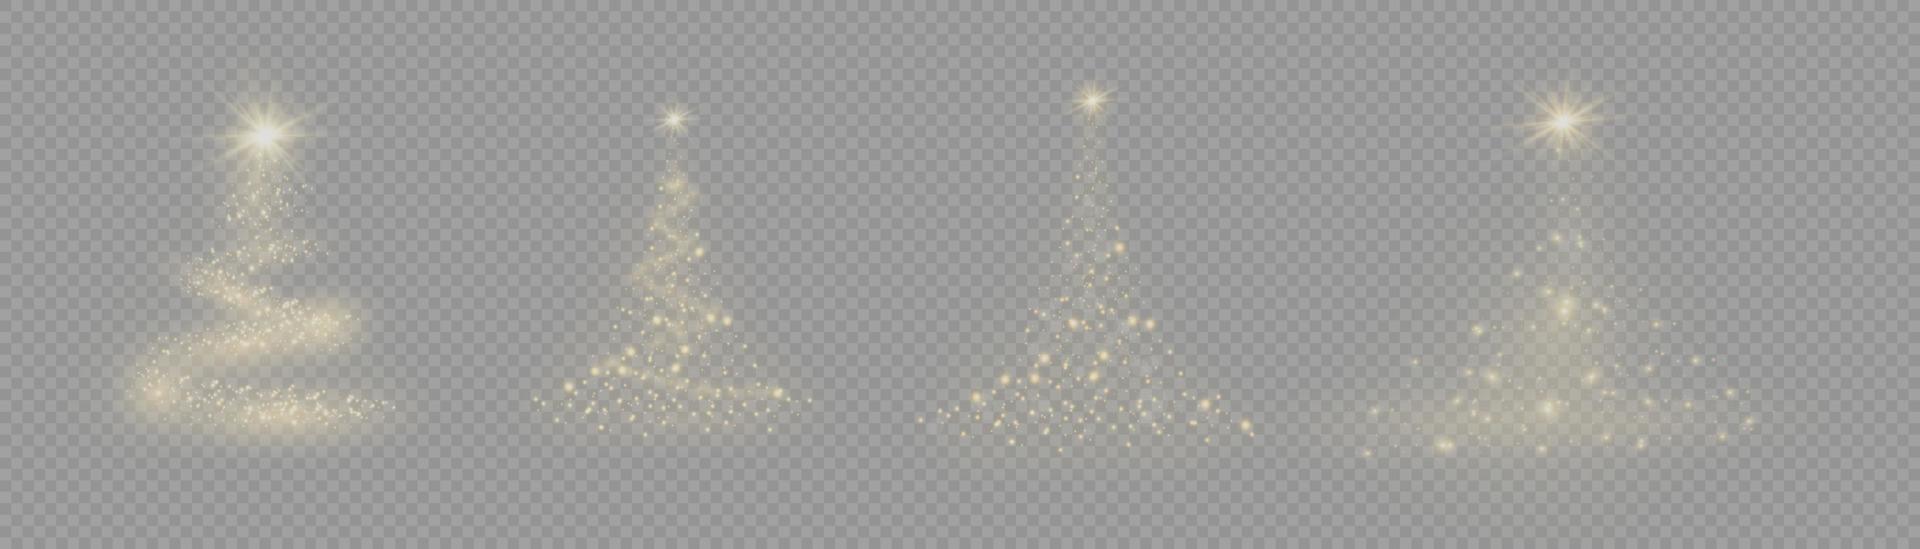 Weihnachtsbaum aus Lichtvektor. goldener weihnachtsbaum als symbol für ein frohes neues jahr, ein frohes weihnachtsfest. goldene Lichtdekoration. hell glänzend vektor